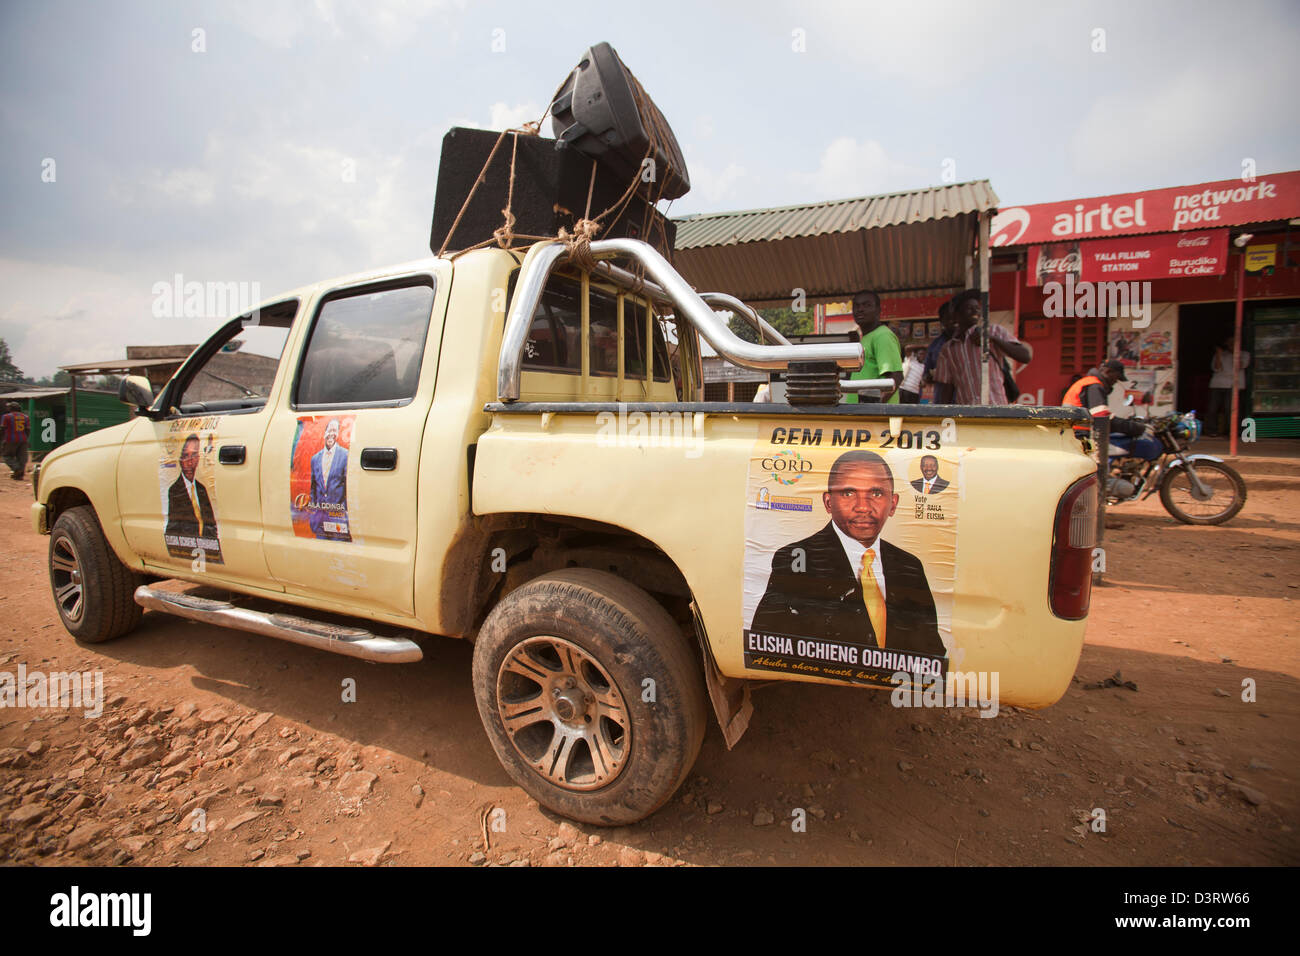 Auto di campagna per la corda MP candidato Eliseo Ochieng Odhiambo, Yala, nella provincia di Nyanza, Kenya, Febbraio 2013 Foto Stock